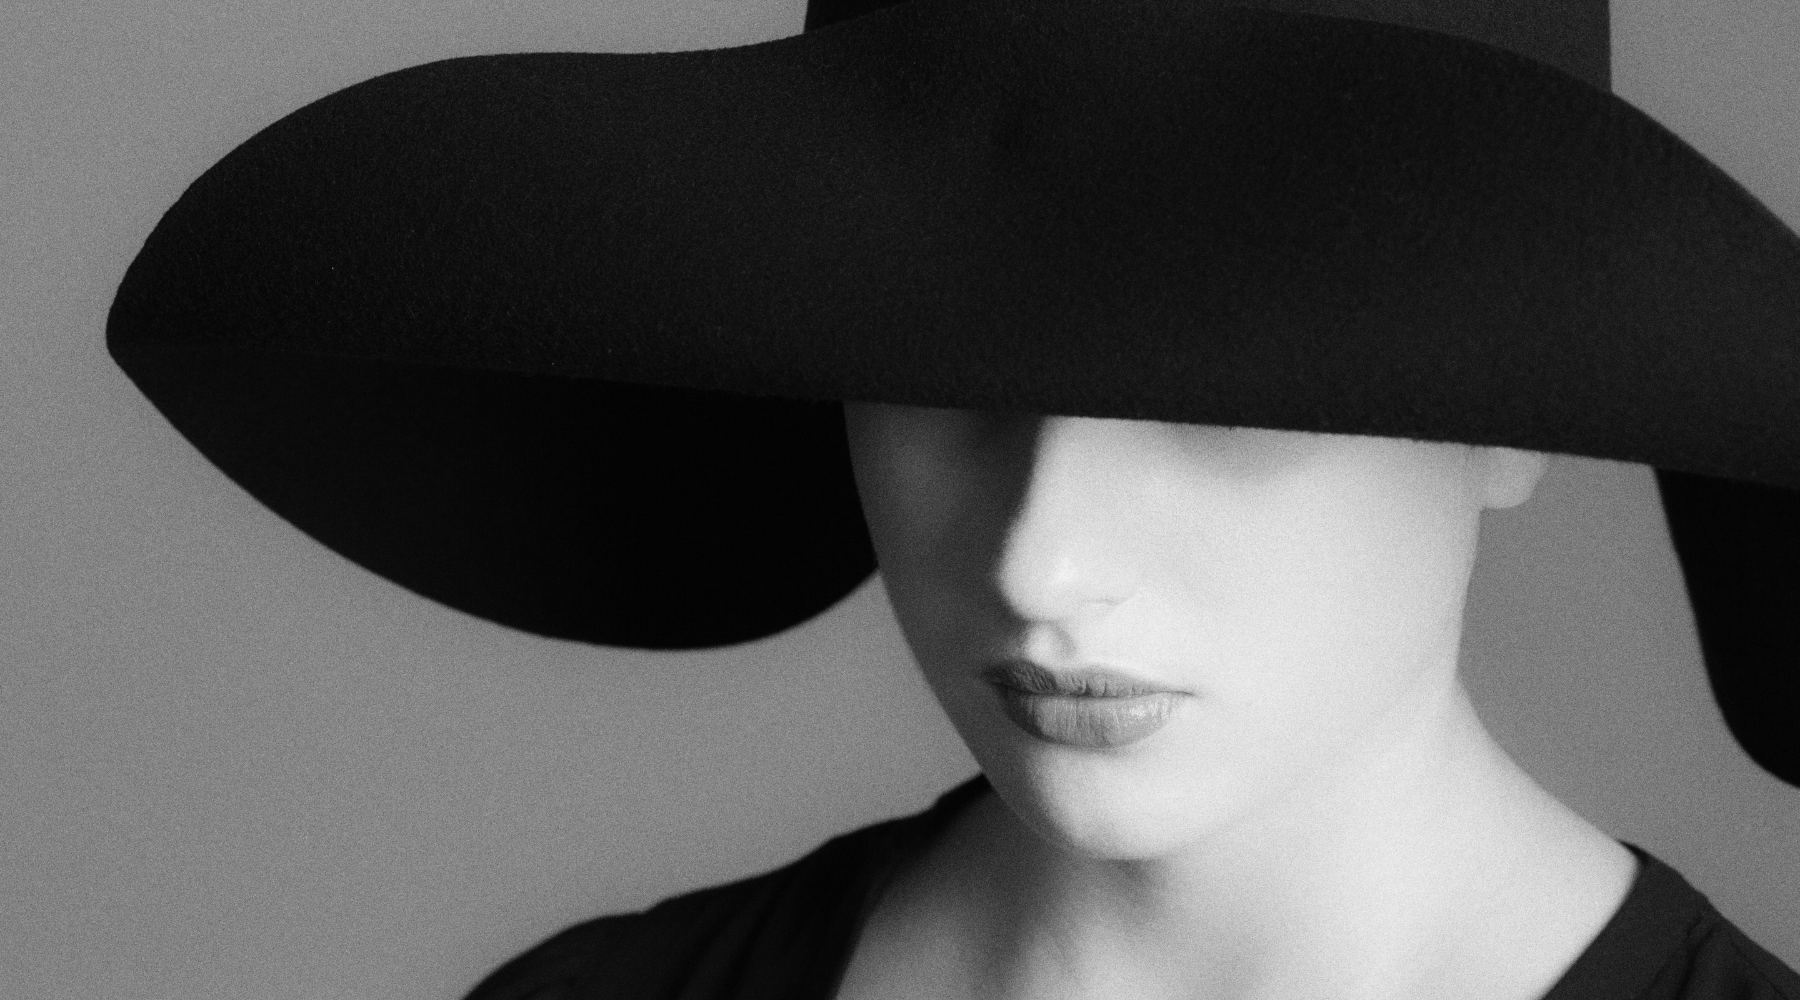 Schwarz-Weiß Foto einer Person, die einen schwarzen Hut trägt, der ihr Gesicht zu großen Teilen bedeckt.